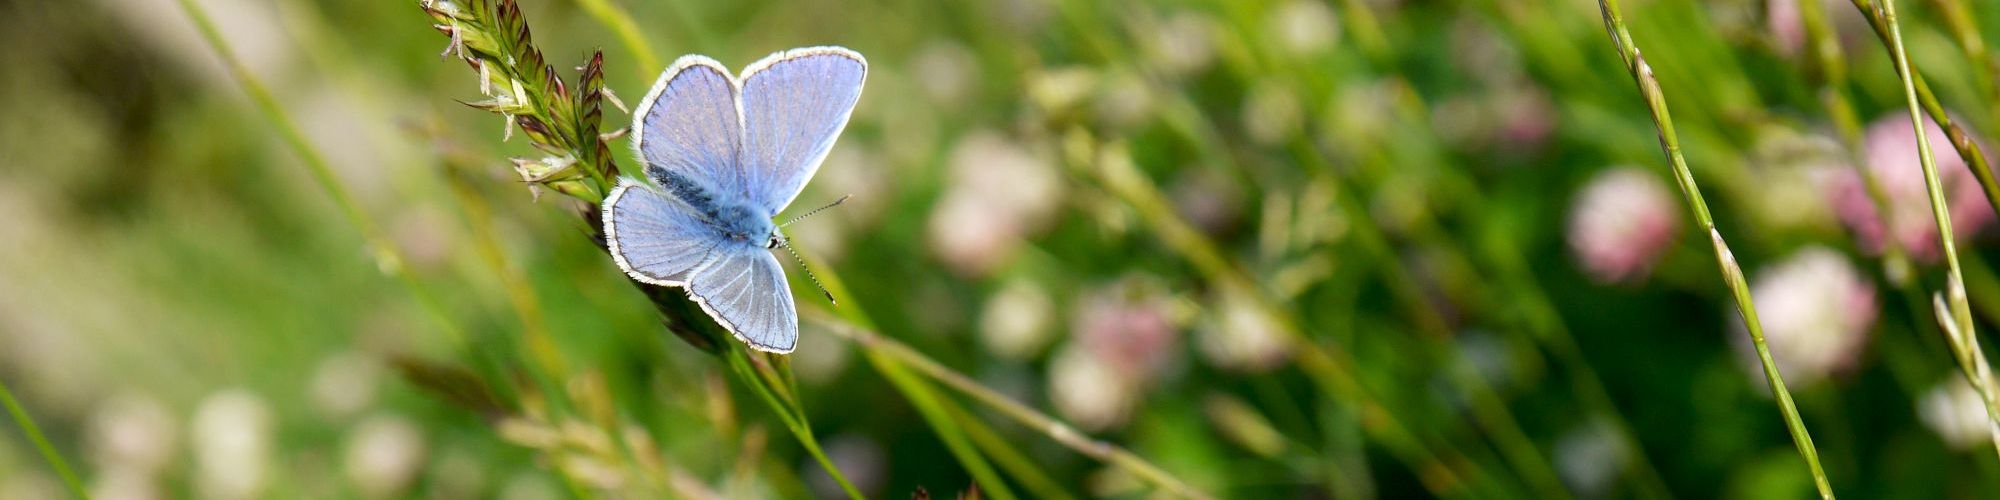 Blauer Schmetterling auf einer Wiese